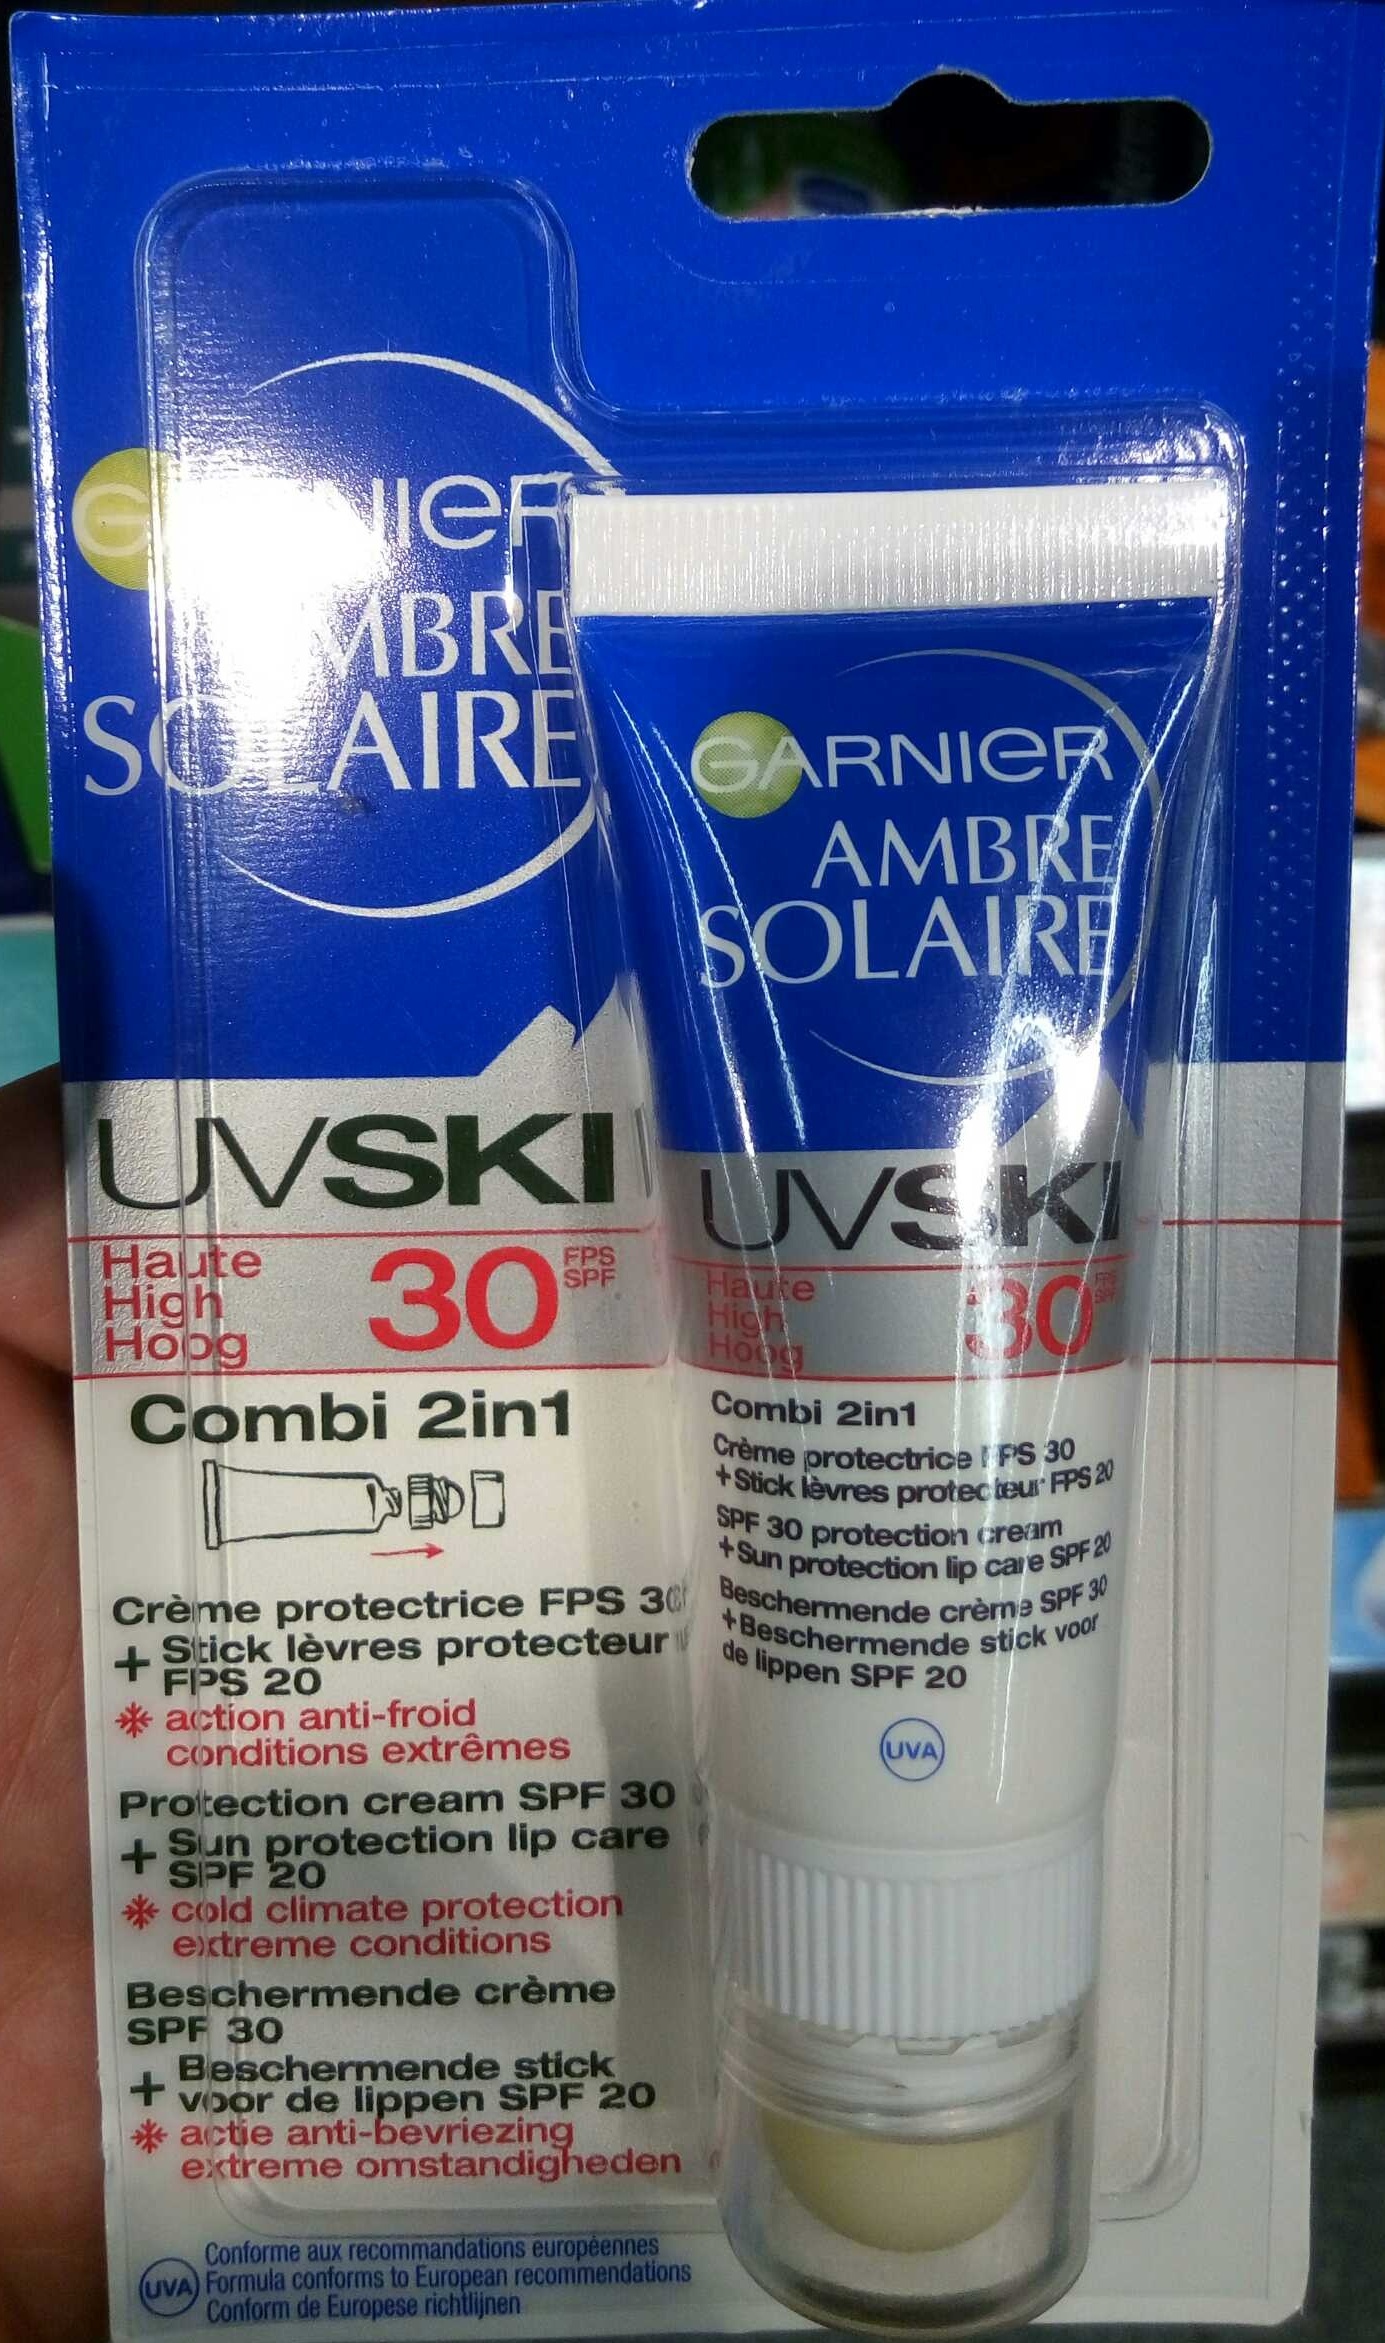 Ambre Solaire UV Ski 30 Combi 2in1 Crème protectrice + Stick lèvres protecteur - Product - en